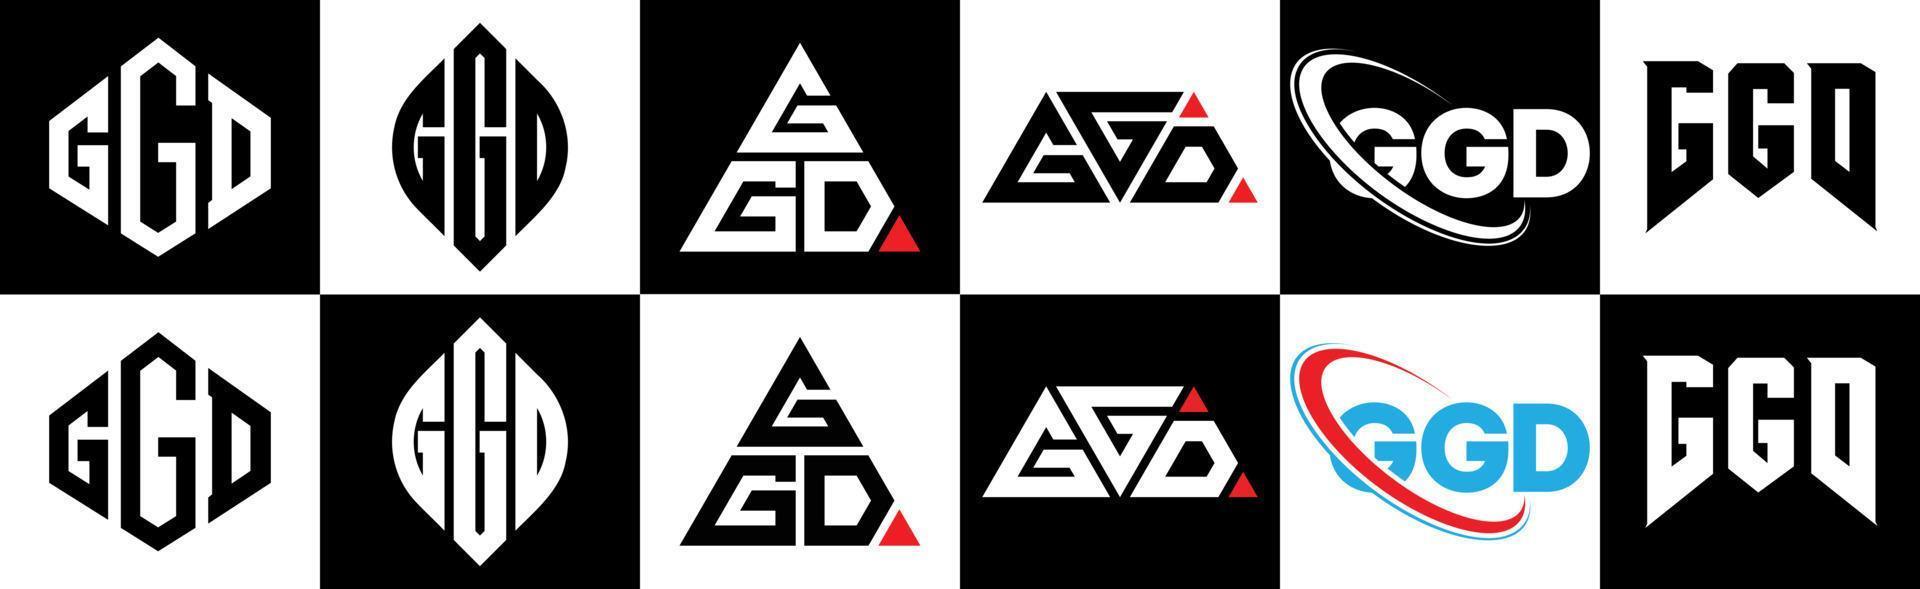 ggd-Buchstaben-Logo-Design in sechs Stilen. ggd polygon, kreis, dreieck, sechseck, flach und einfacher stil mit schwarz-weißem buchstabenlogo in einer zeichenfläche. ggd minimalistisches und klassisches logo vektor